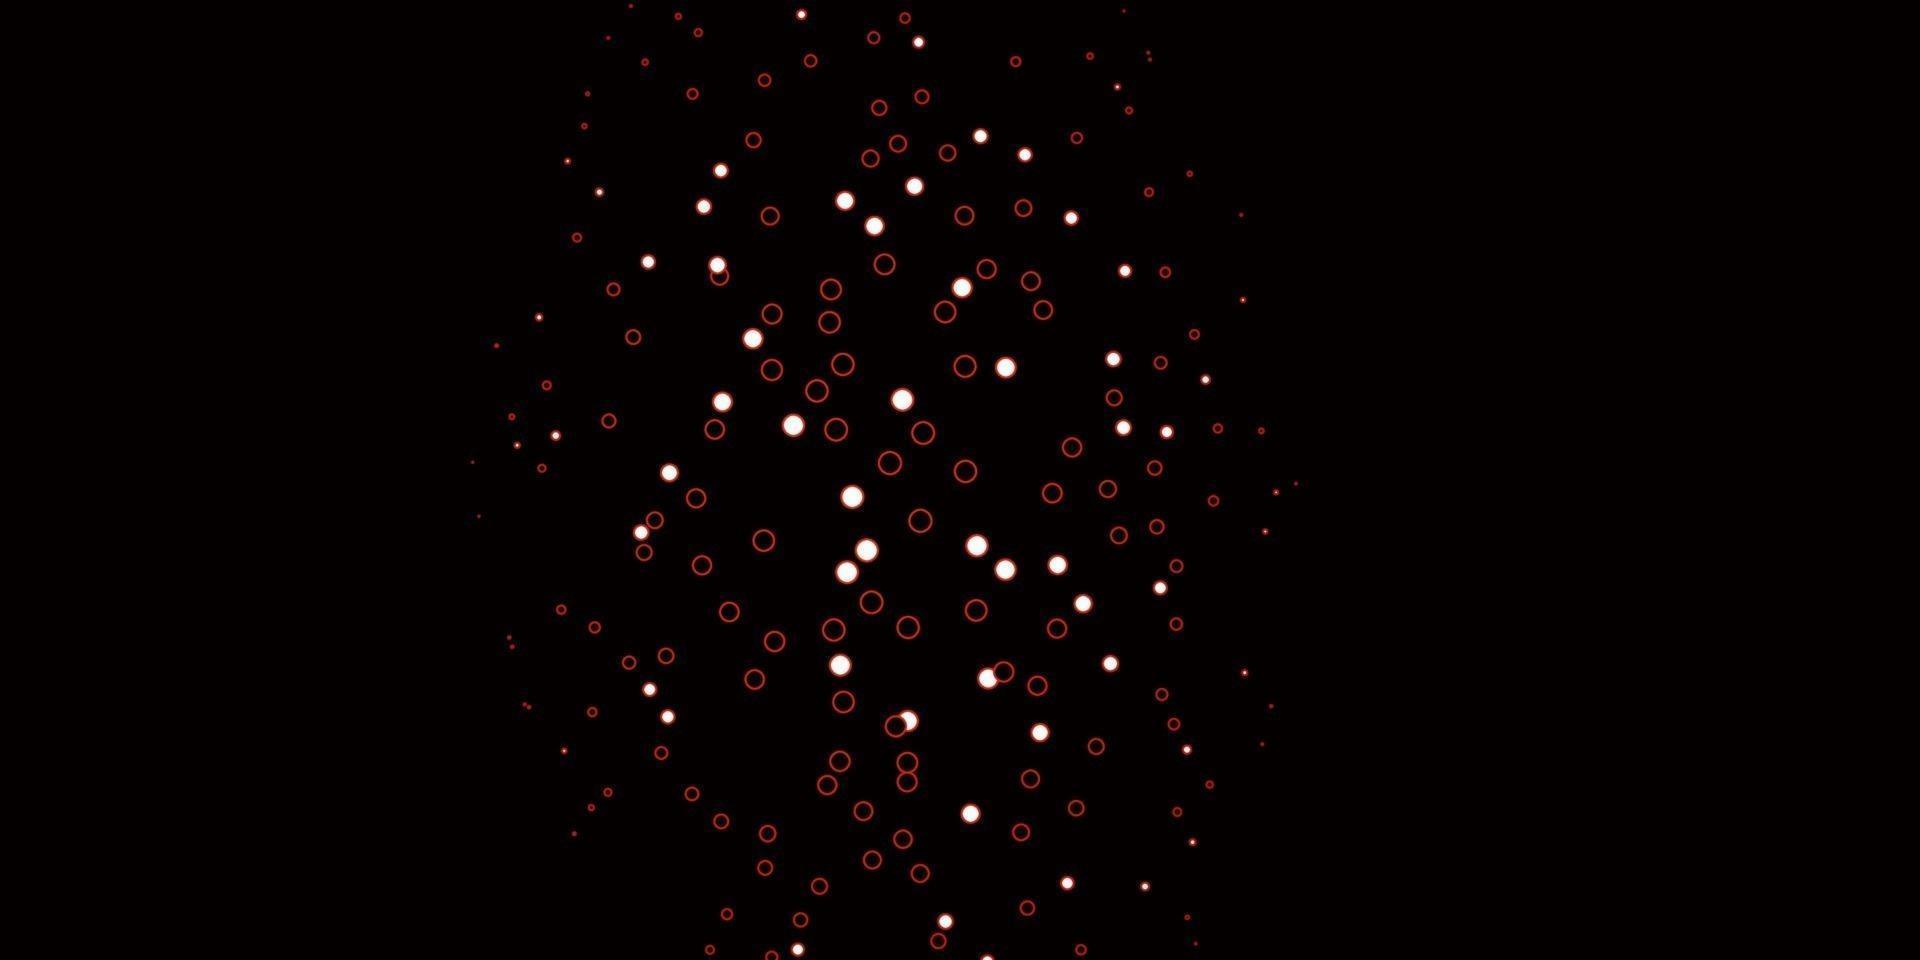 mörk röd vektor bakgrund med prickar.